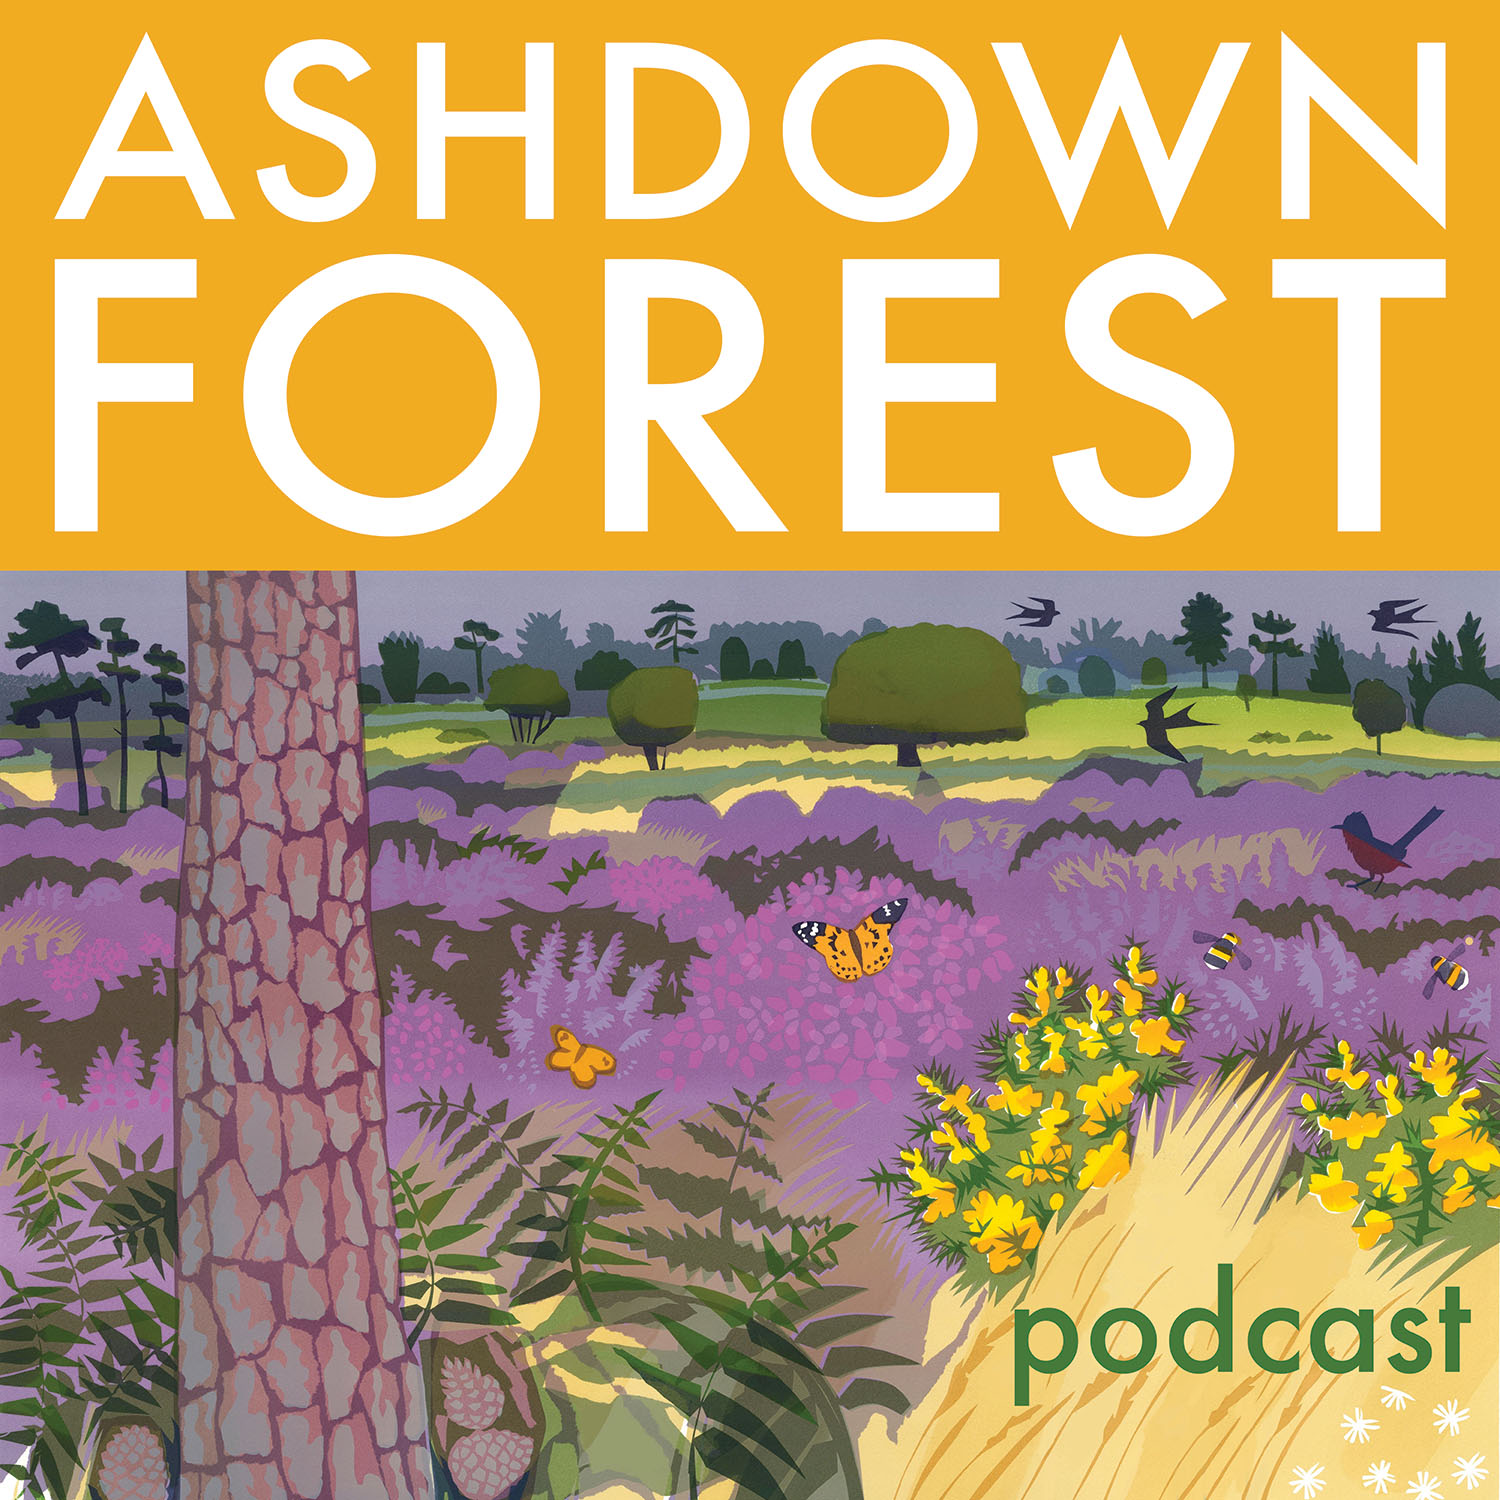 Artwork for podcast Ashdown Forest podcast